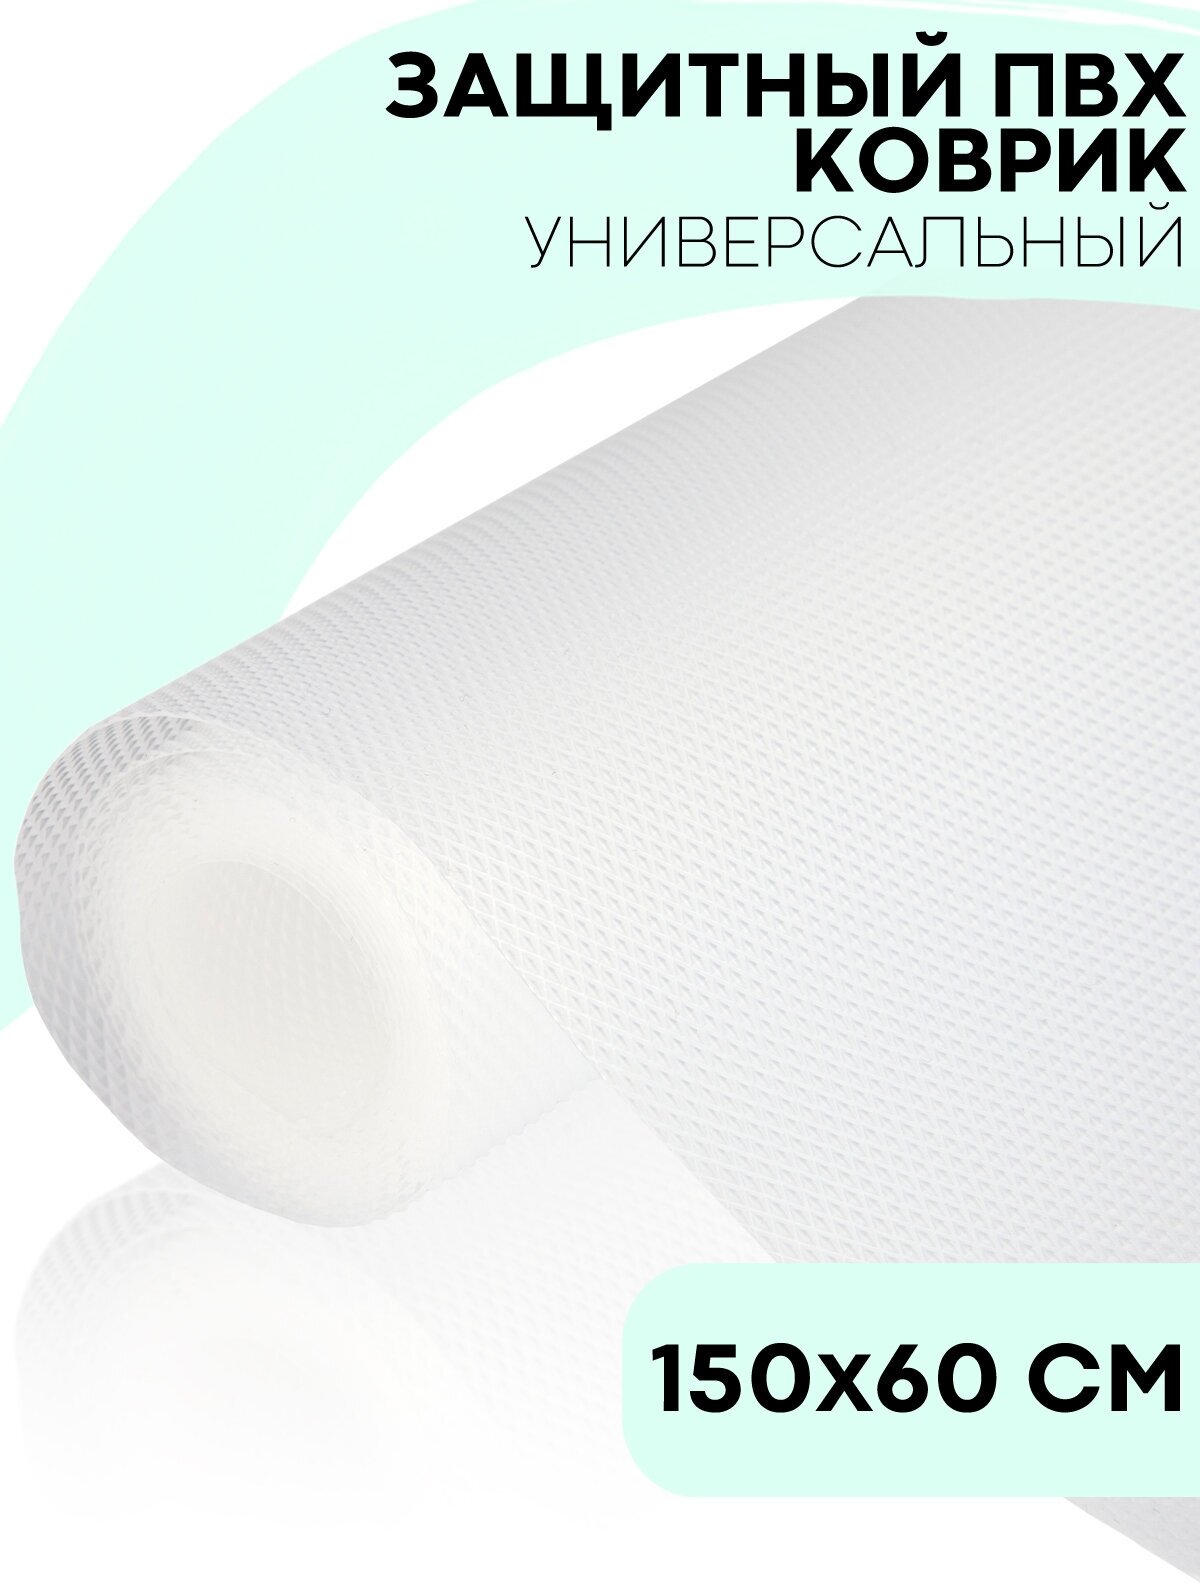 Водостойкий противоскользящий ПВХ коврик-подстилка для кухонных полок ящиков холодильника (универсальный 150 см х 60 см в рулоне) белый